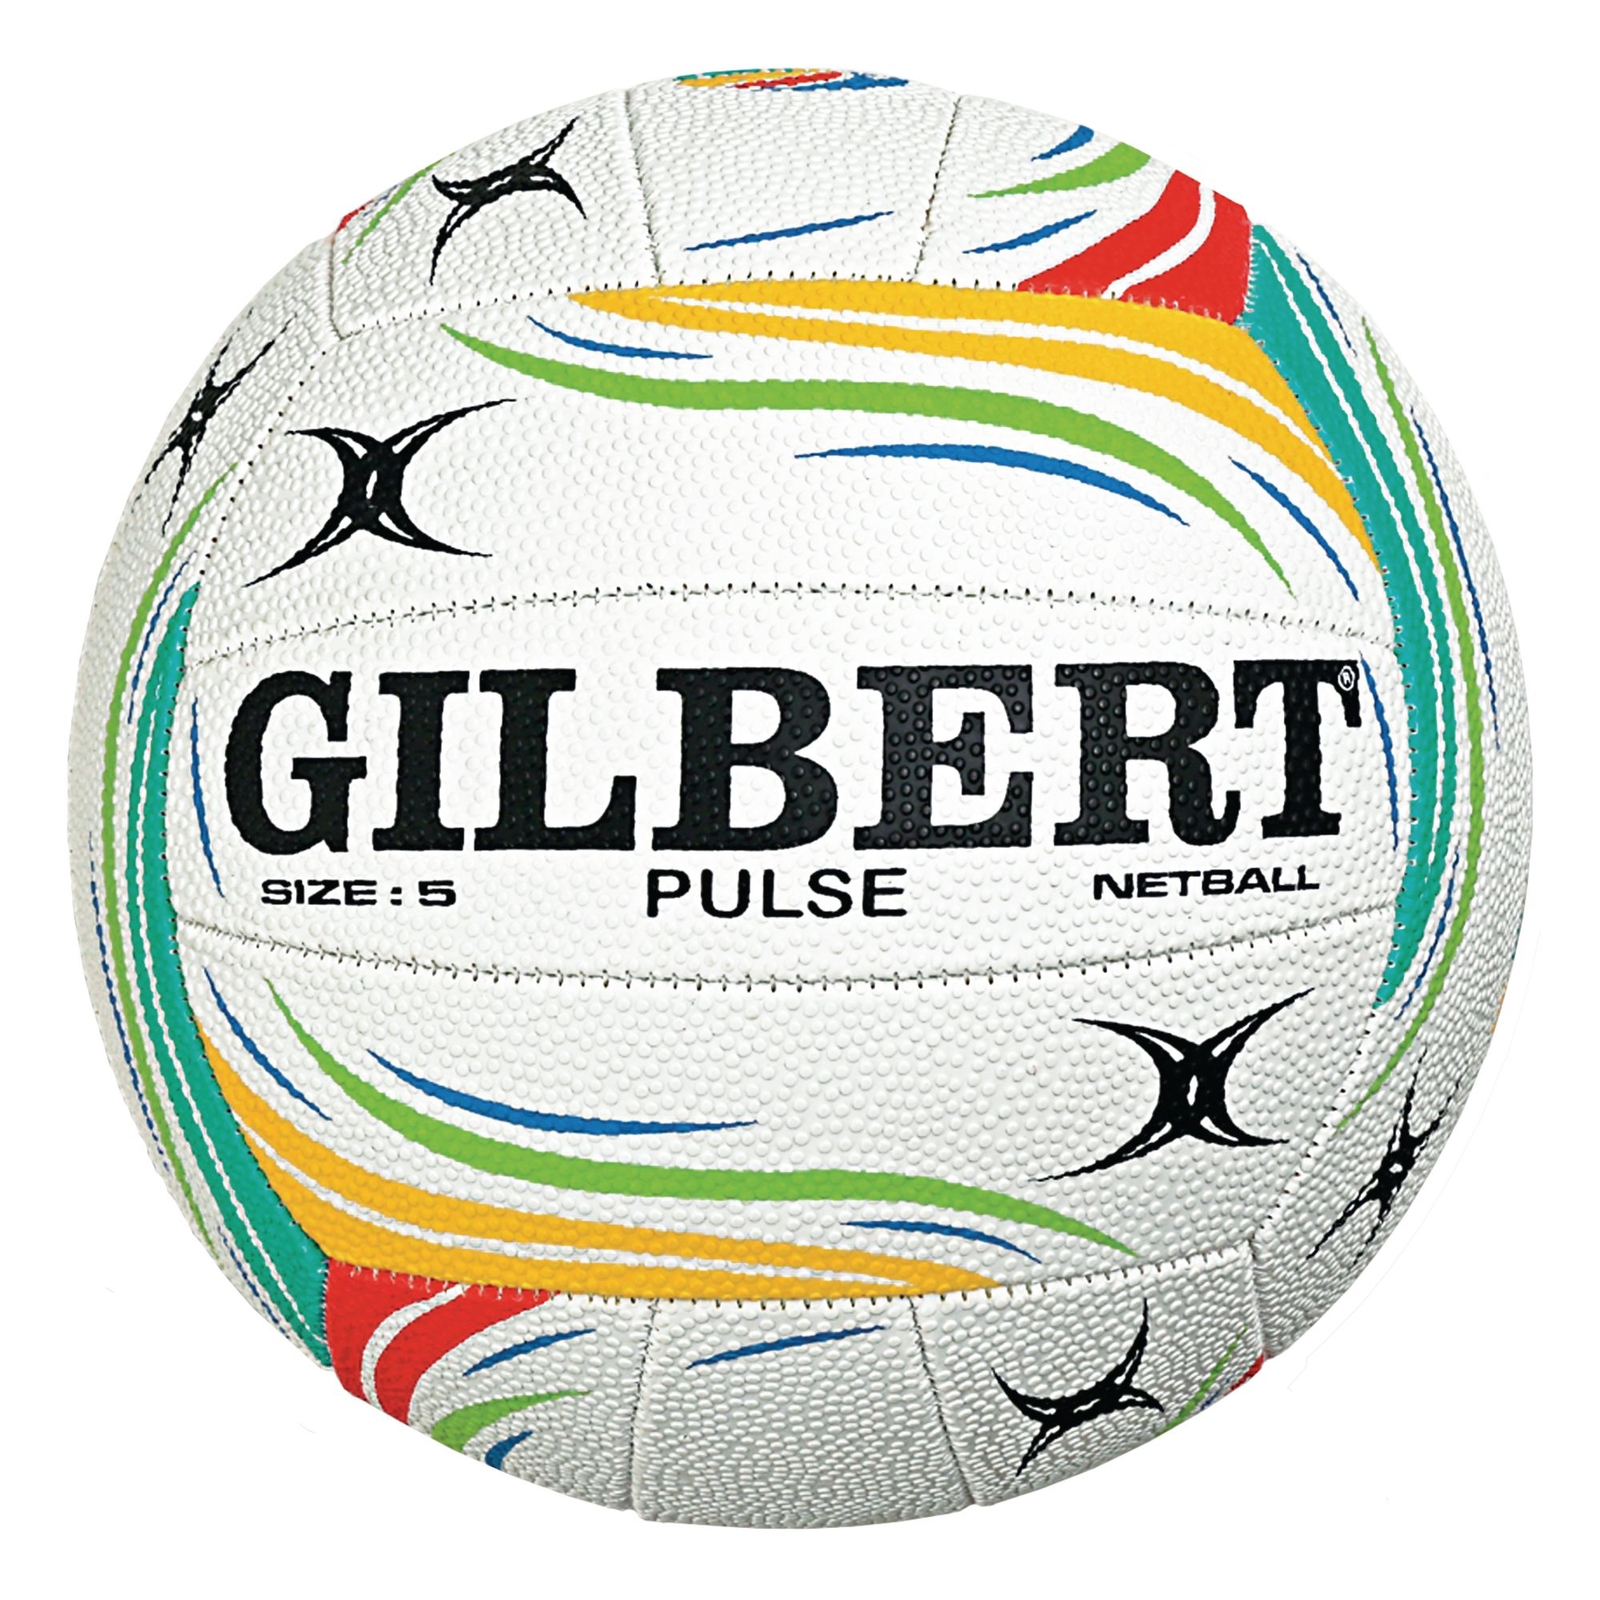 Gilbert Pulse Netball - Size 5